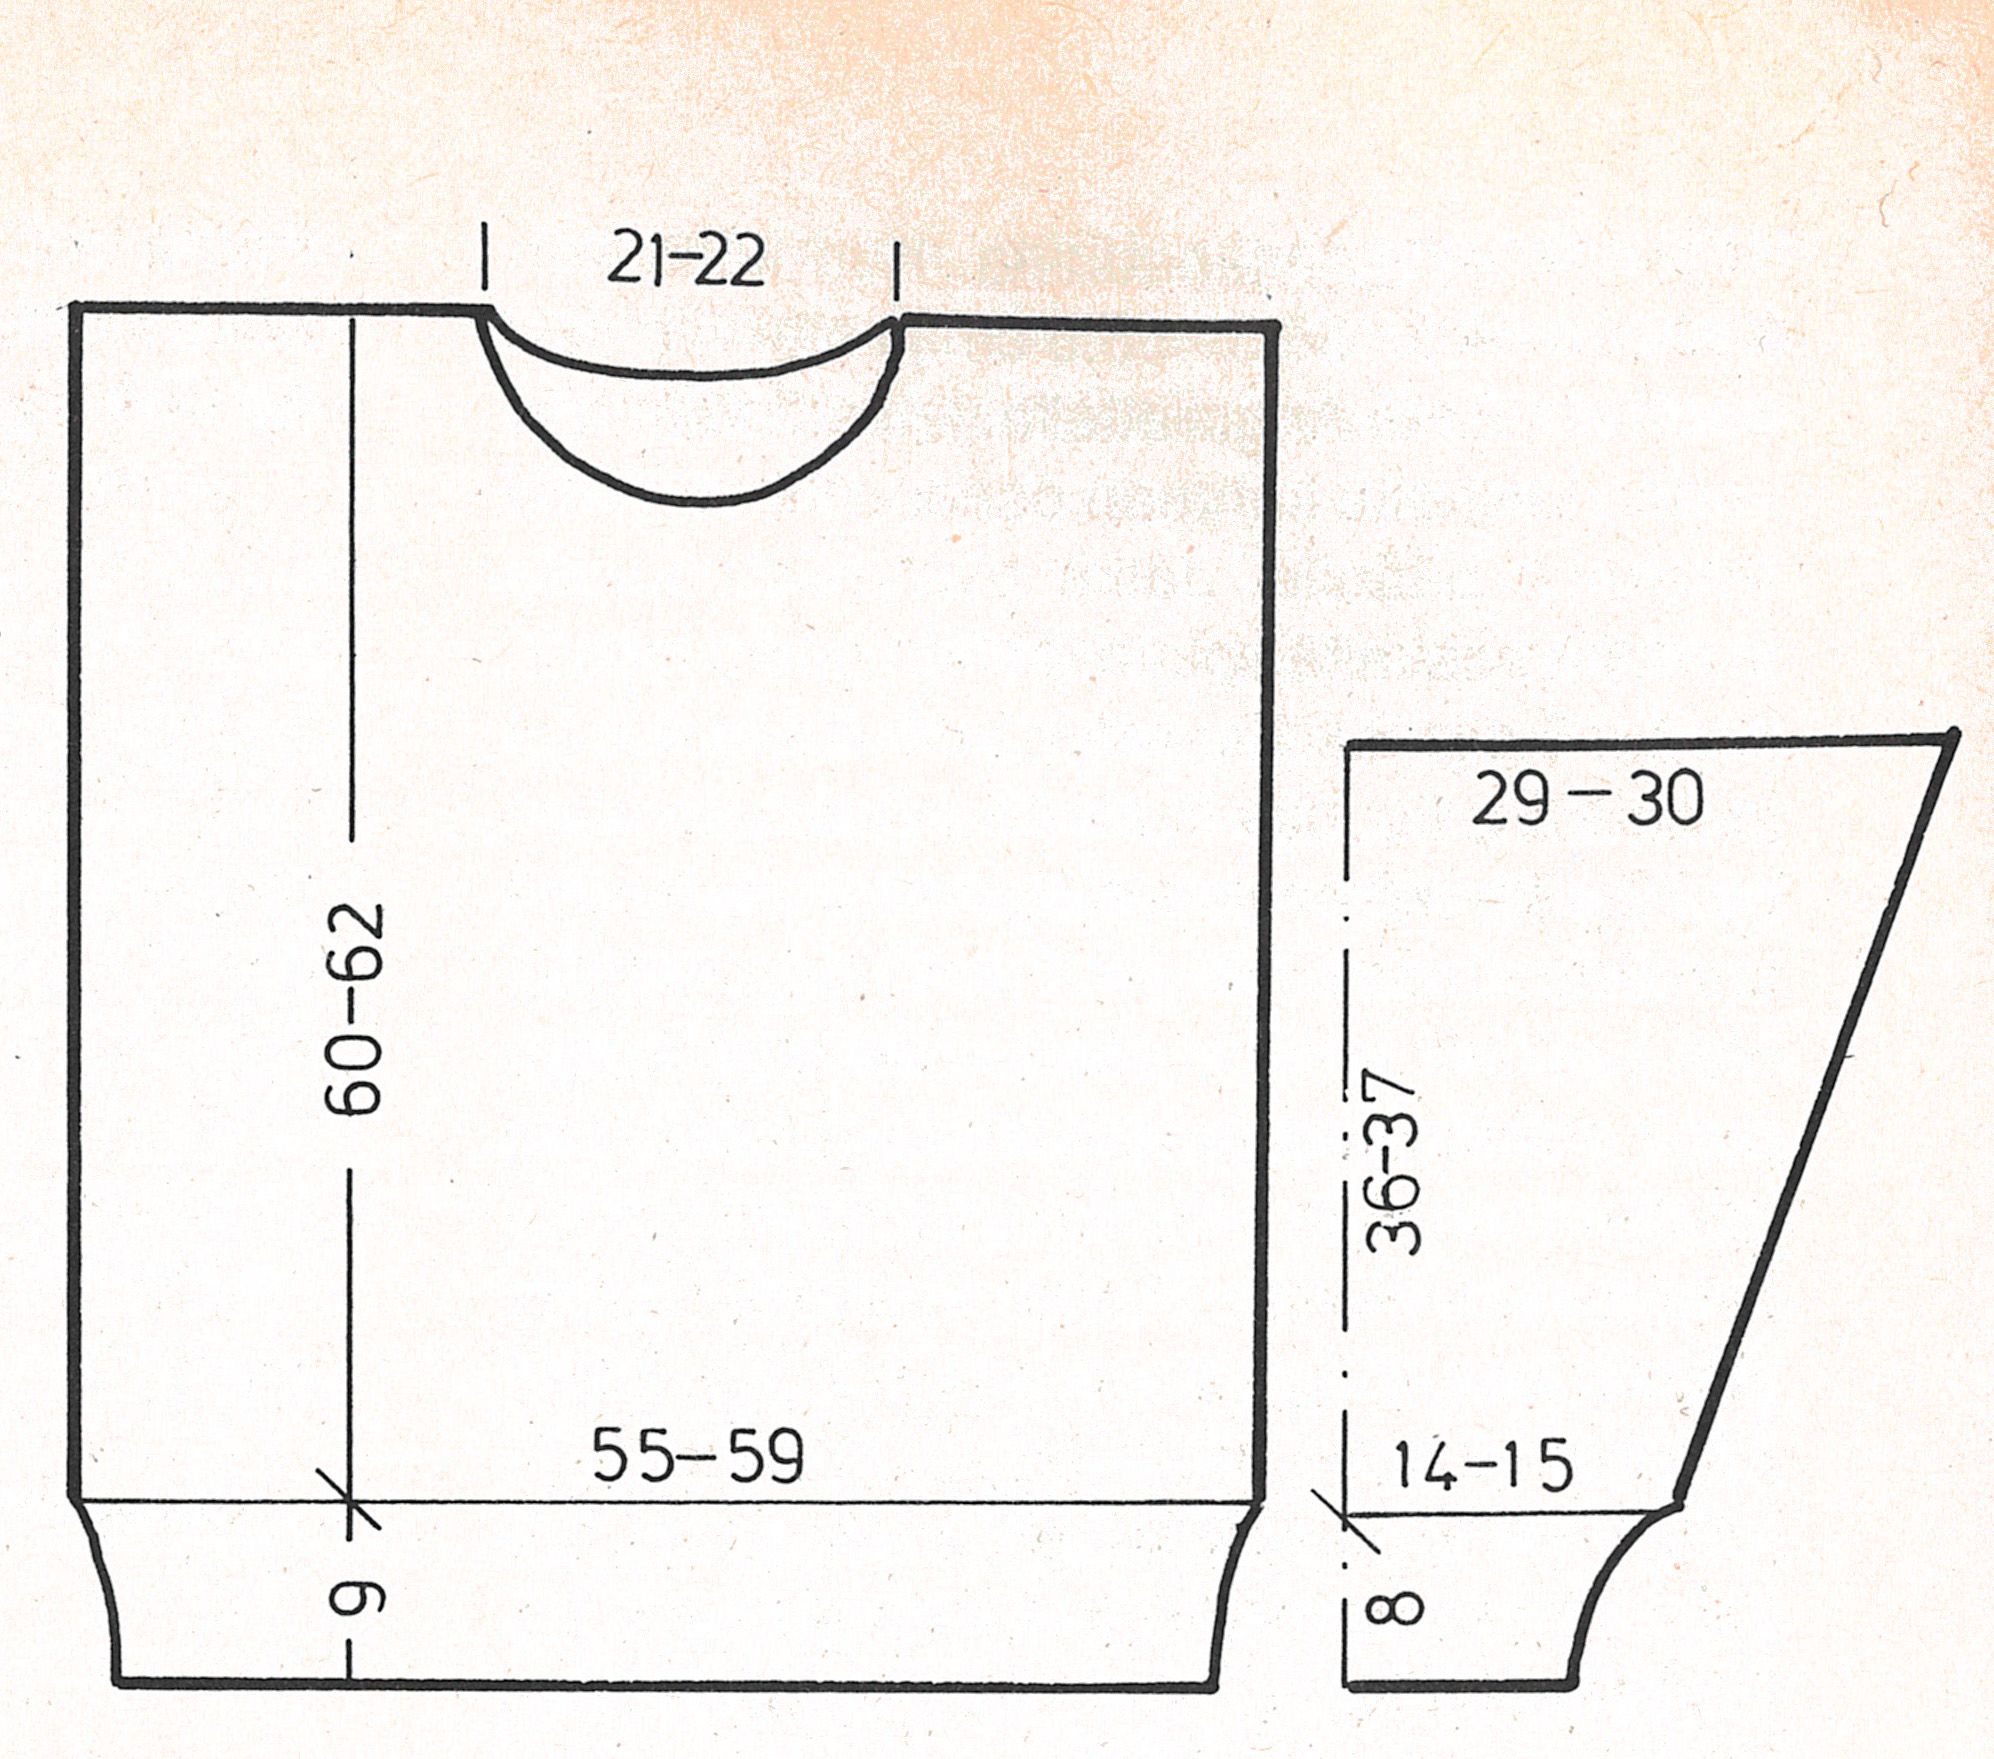 Arkistomalli: Palmikkopusero 1980-luvulta Instruction 1